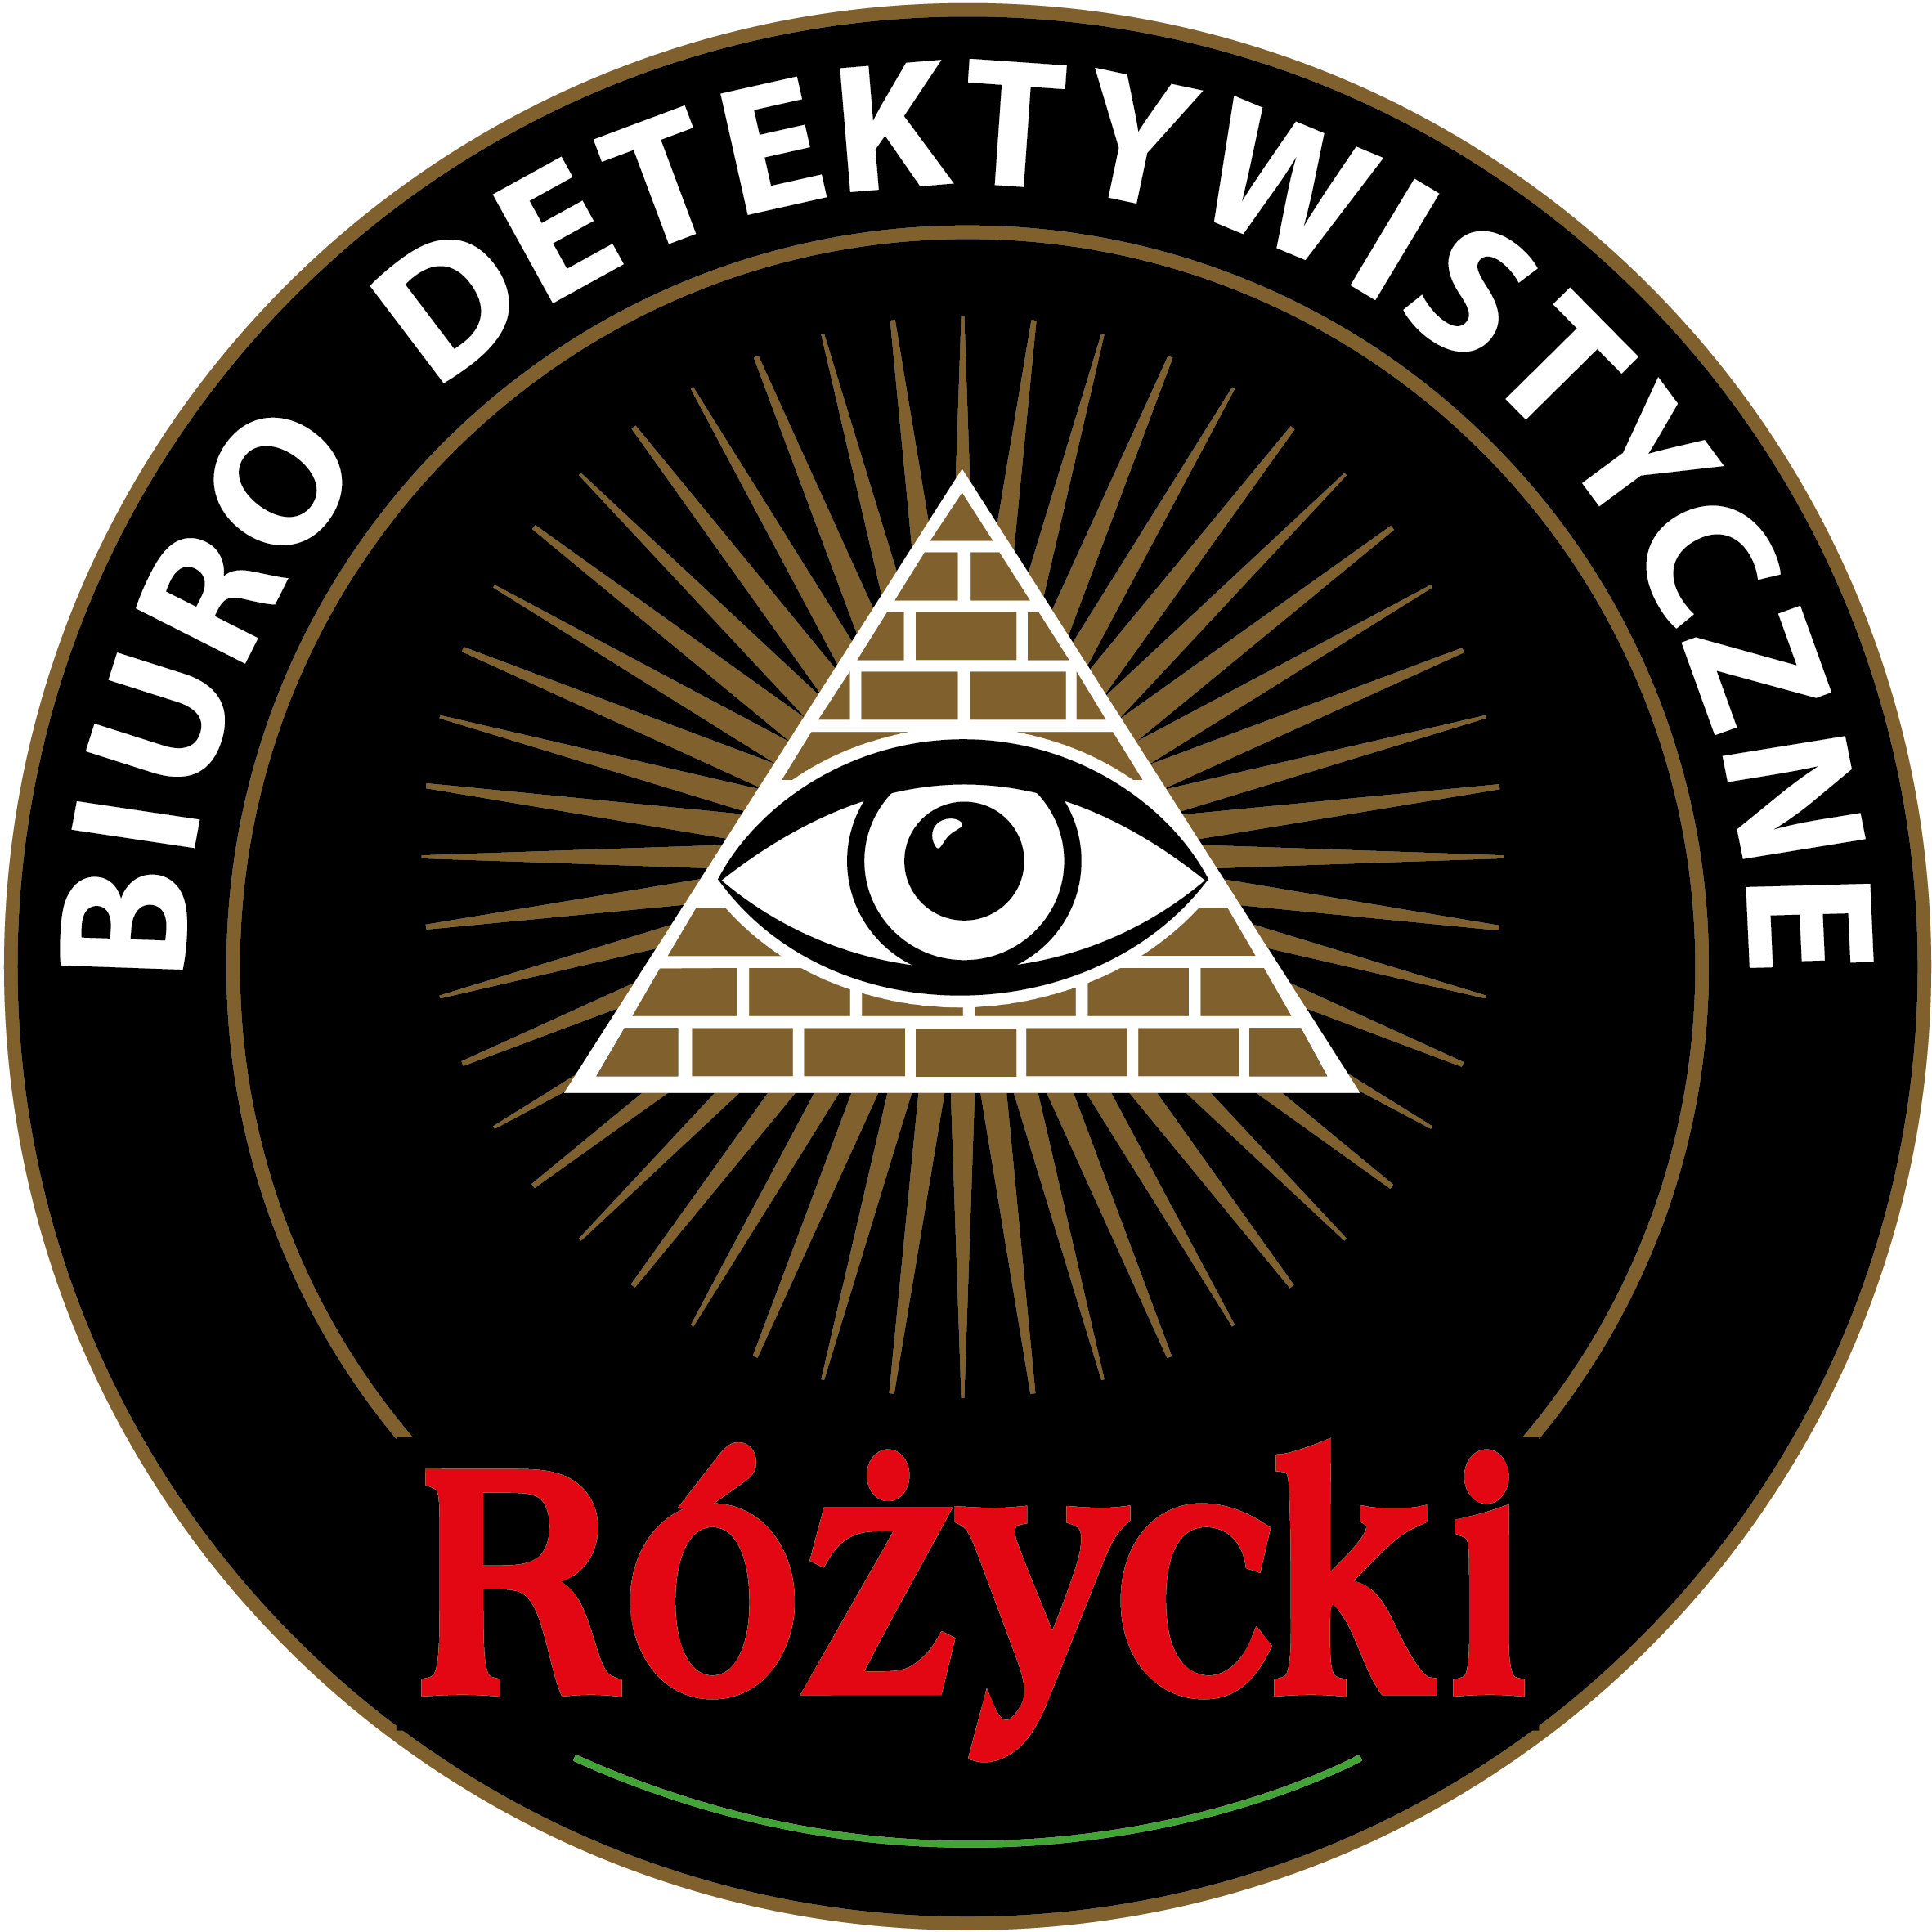 Detektyw Kraków obserwuje